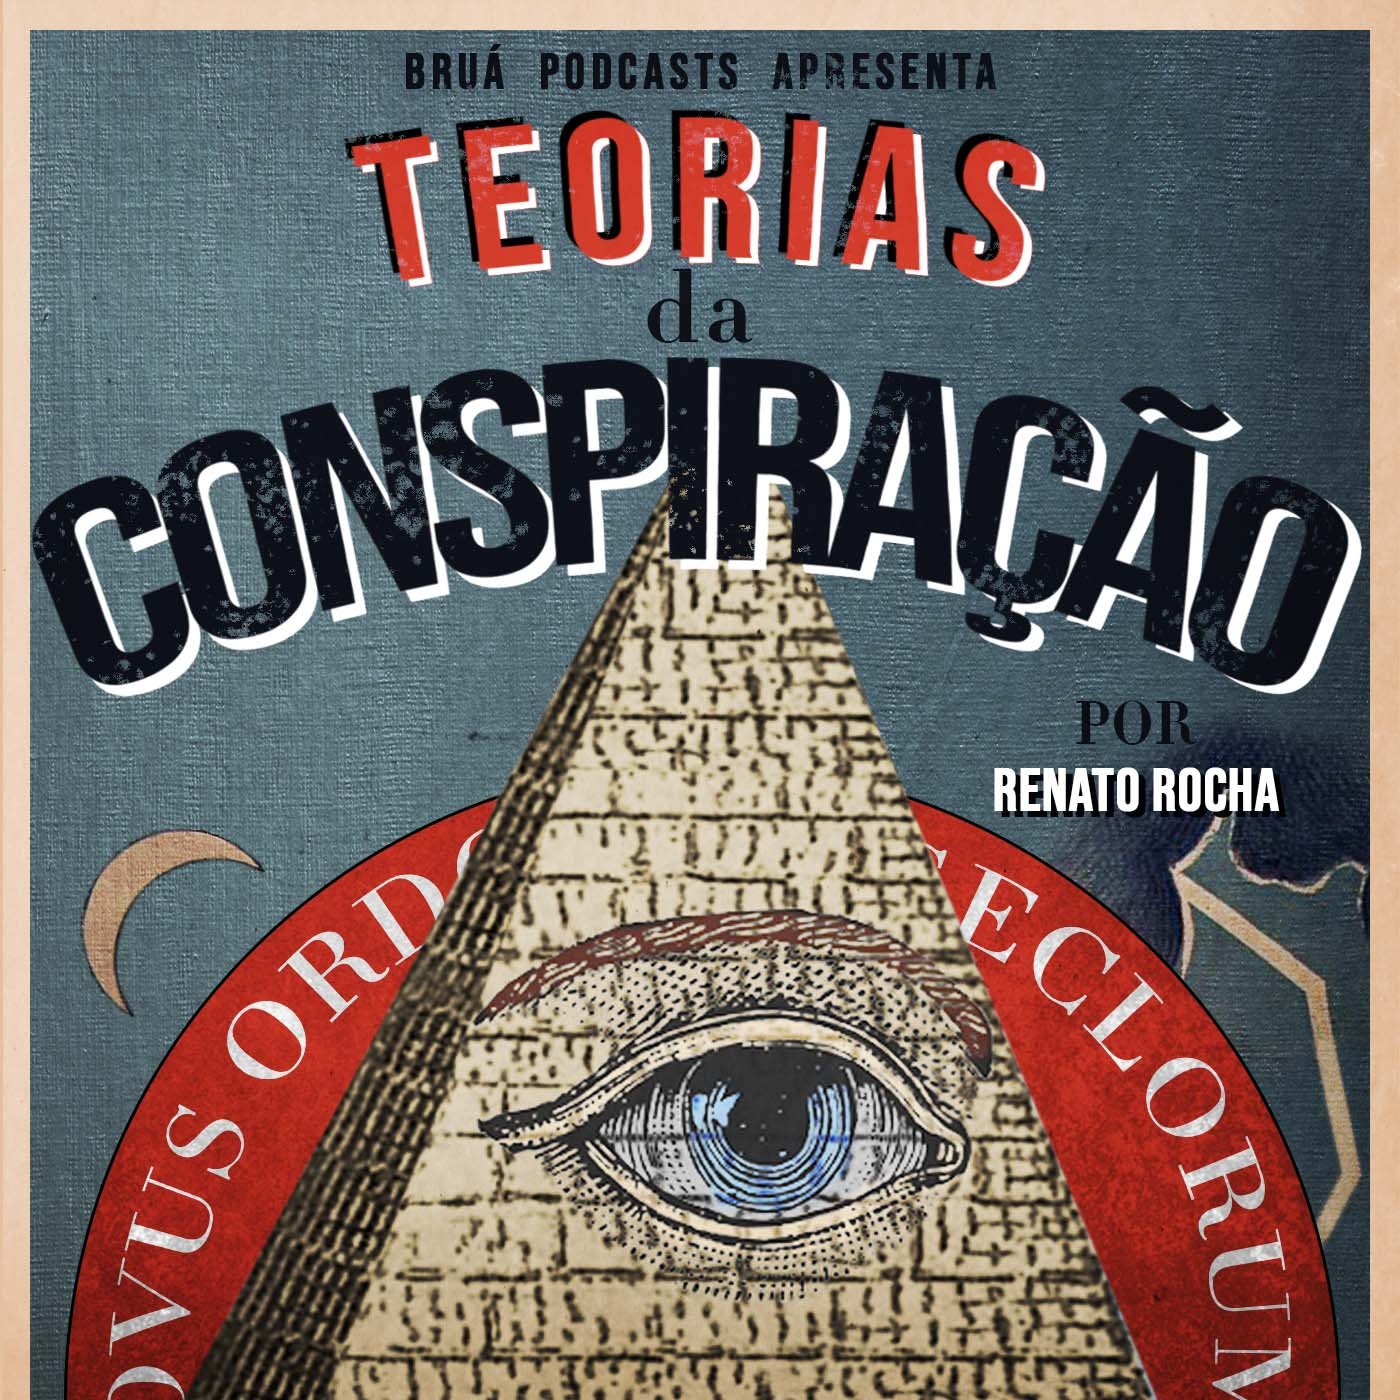 Podcast Bruá: Teorias da Conspiração